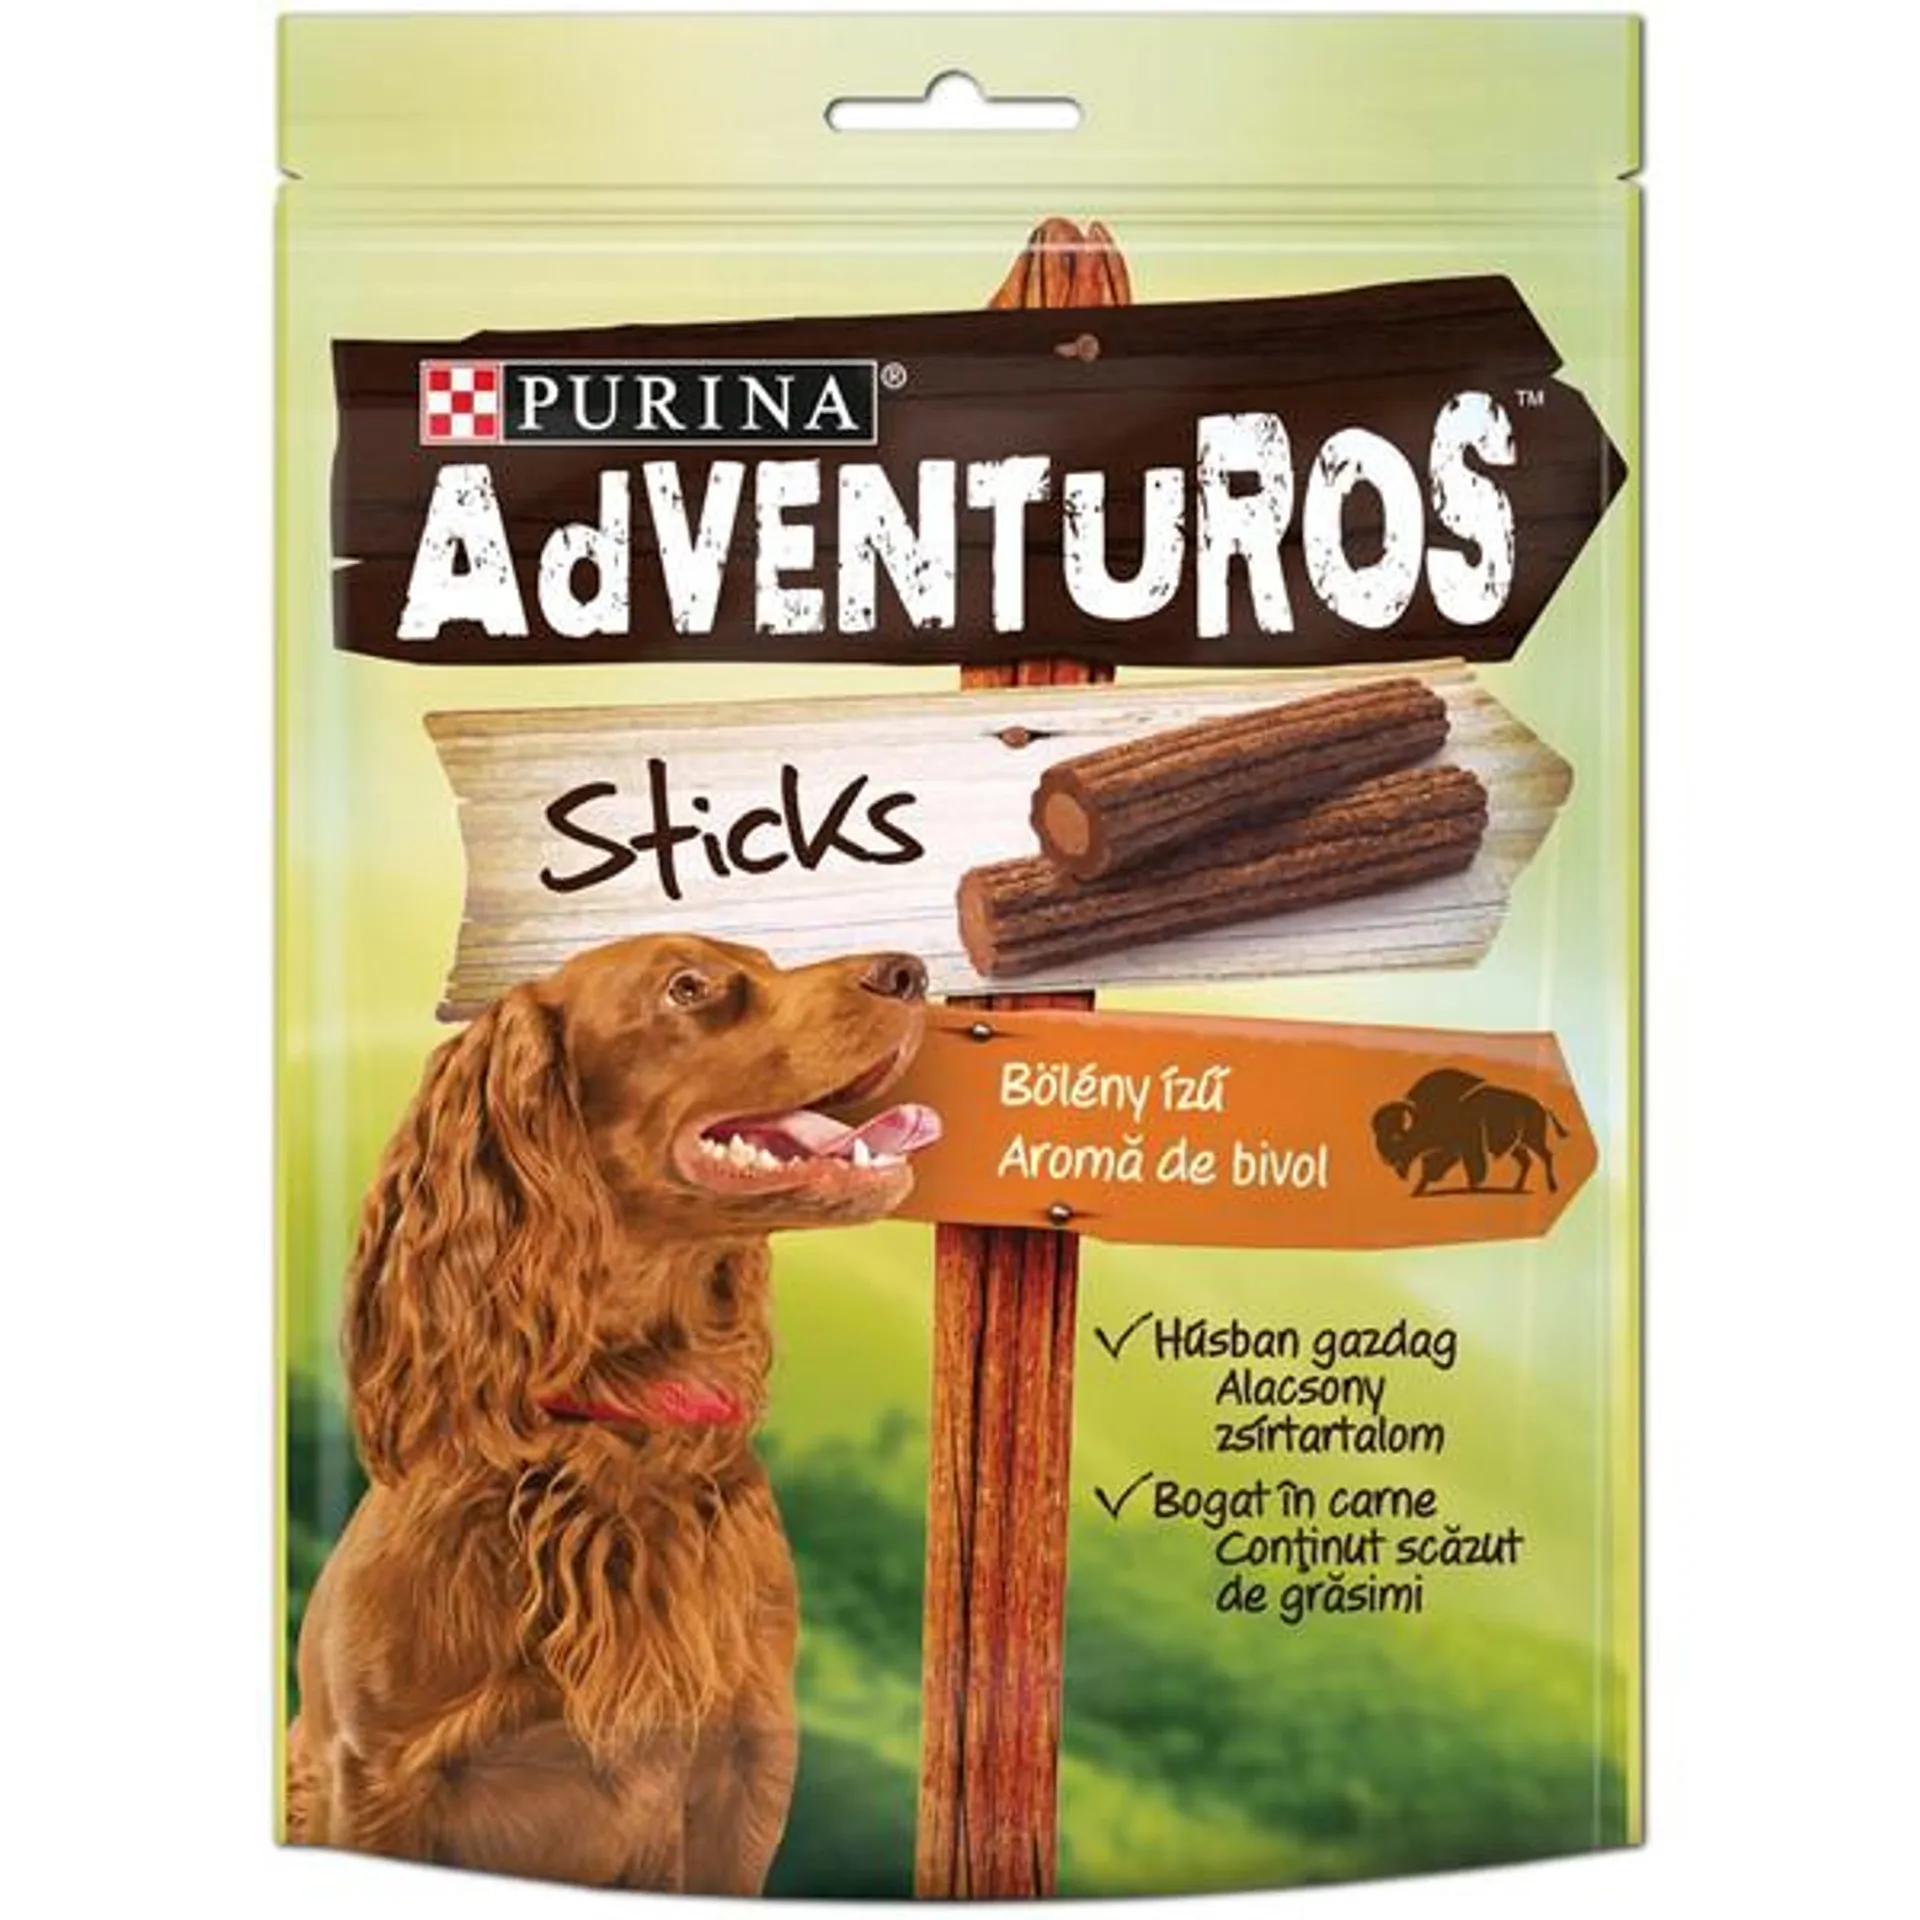 ADVENTUROS Sticks, slasni štapići s okusom bizona, 120 g